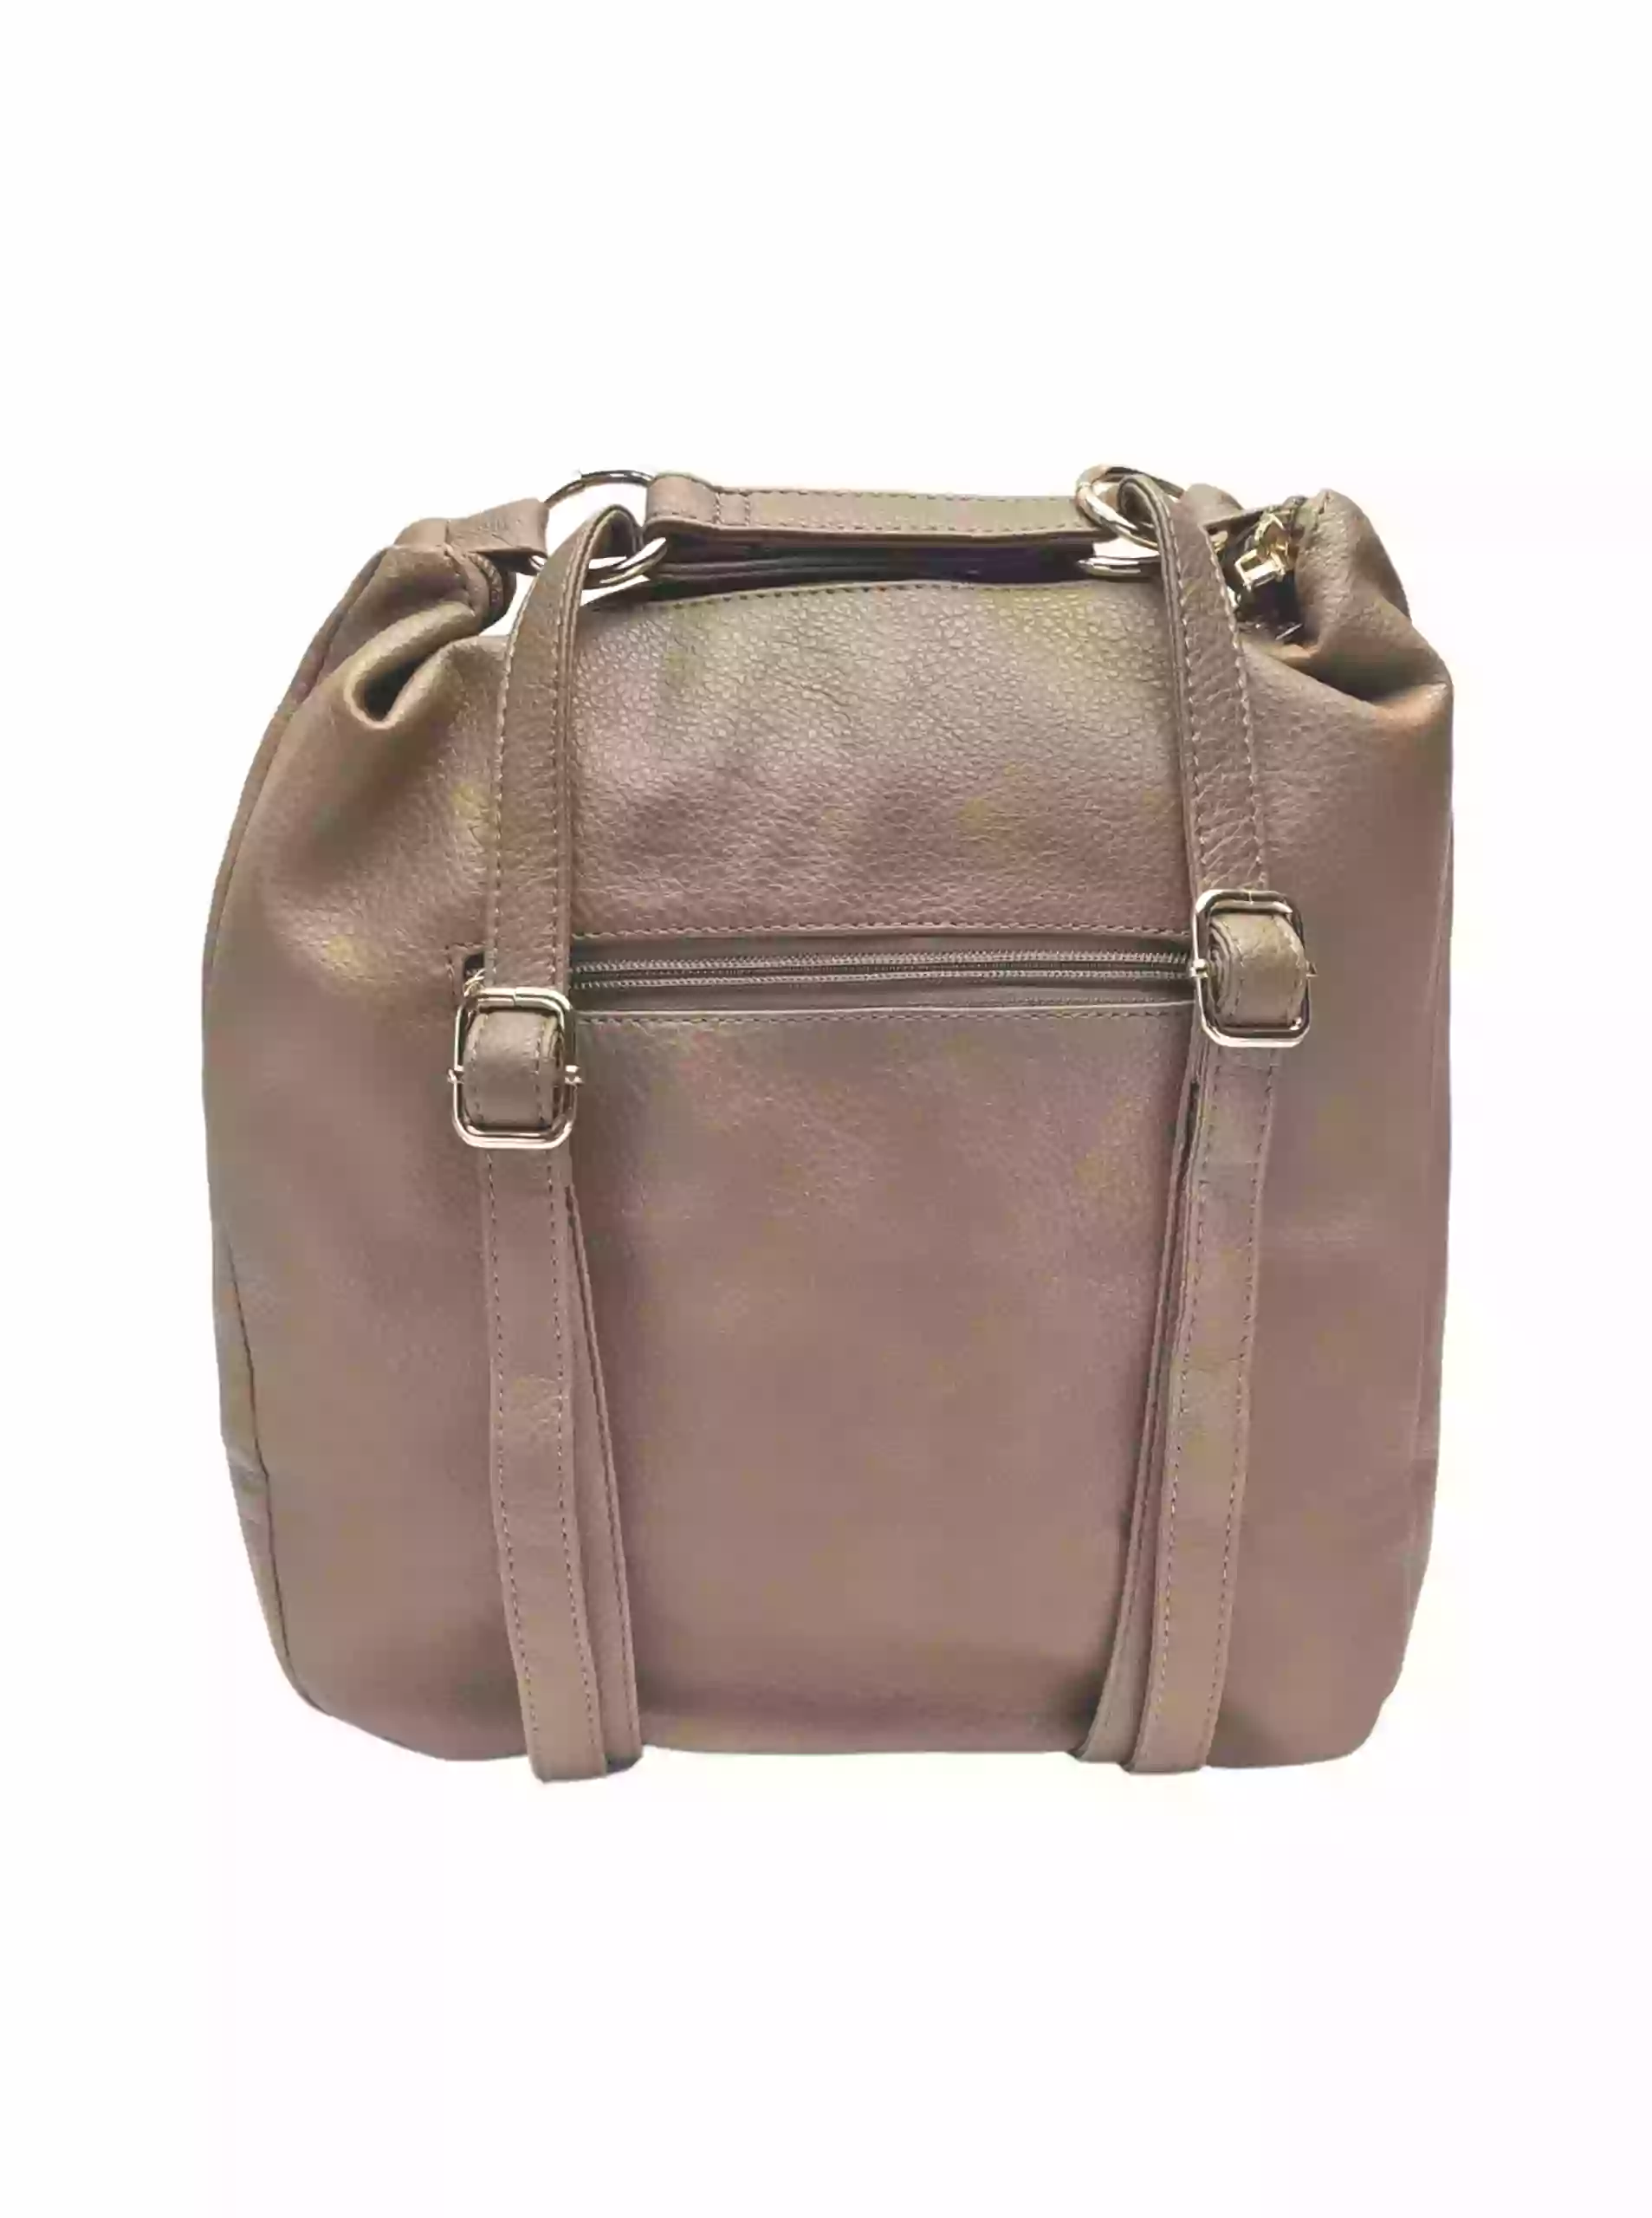 Velký hnědošedý kabelko-batoh 2v1 s kapsou, Int. Company, H23, zadní strana kabelko-batohu s popruhy